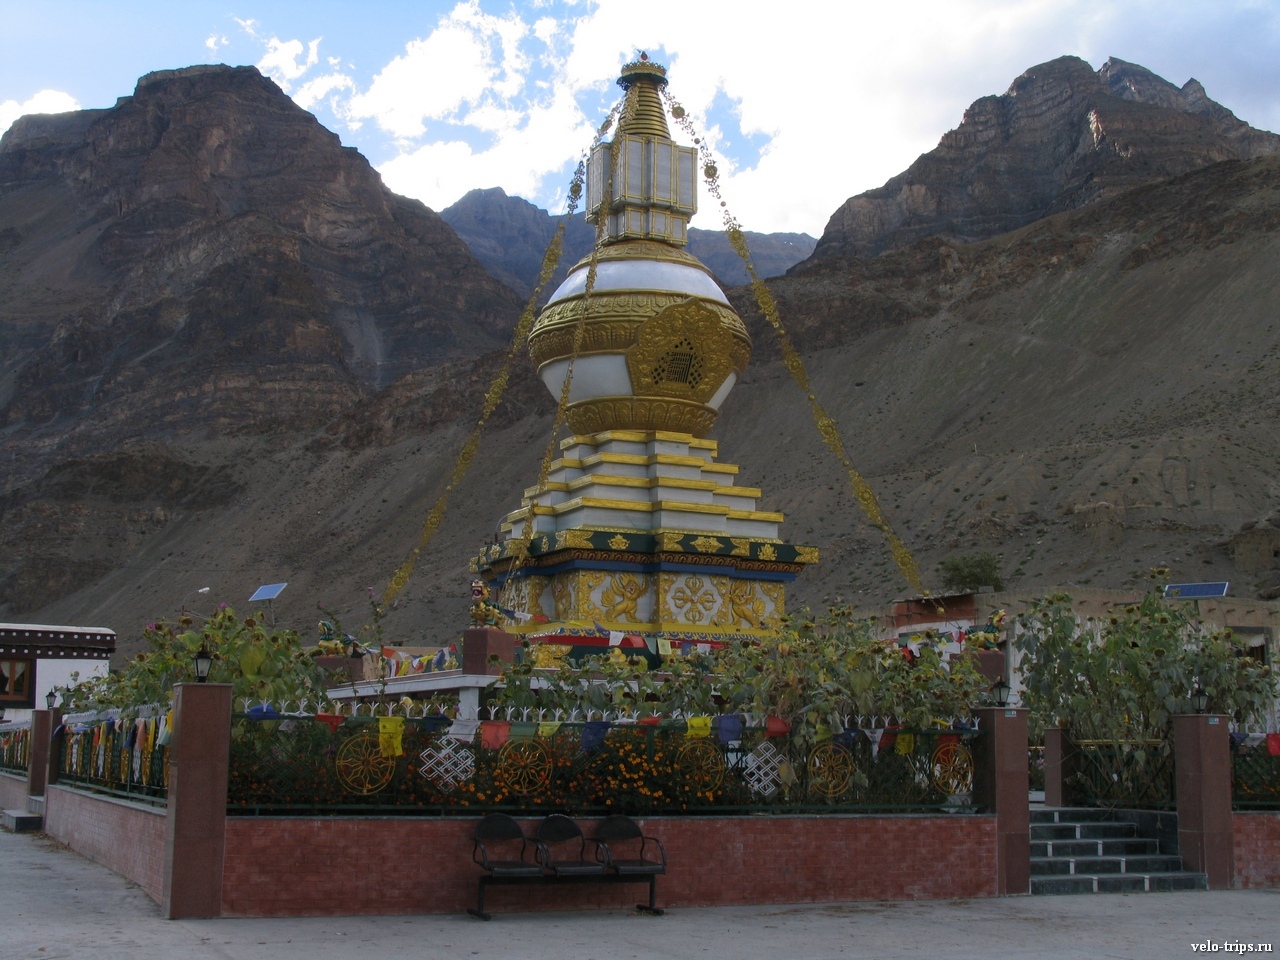 Giant stupa in gompa in Tabo, Himalaya